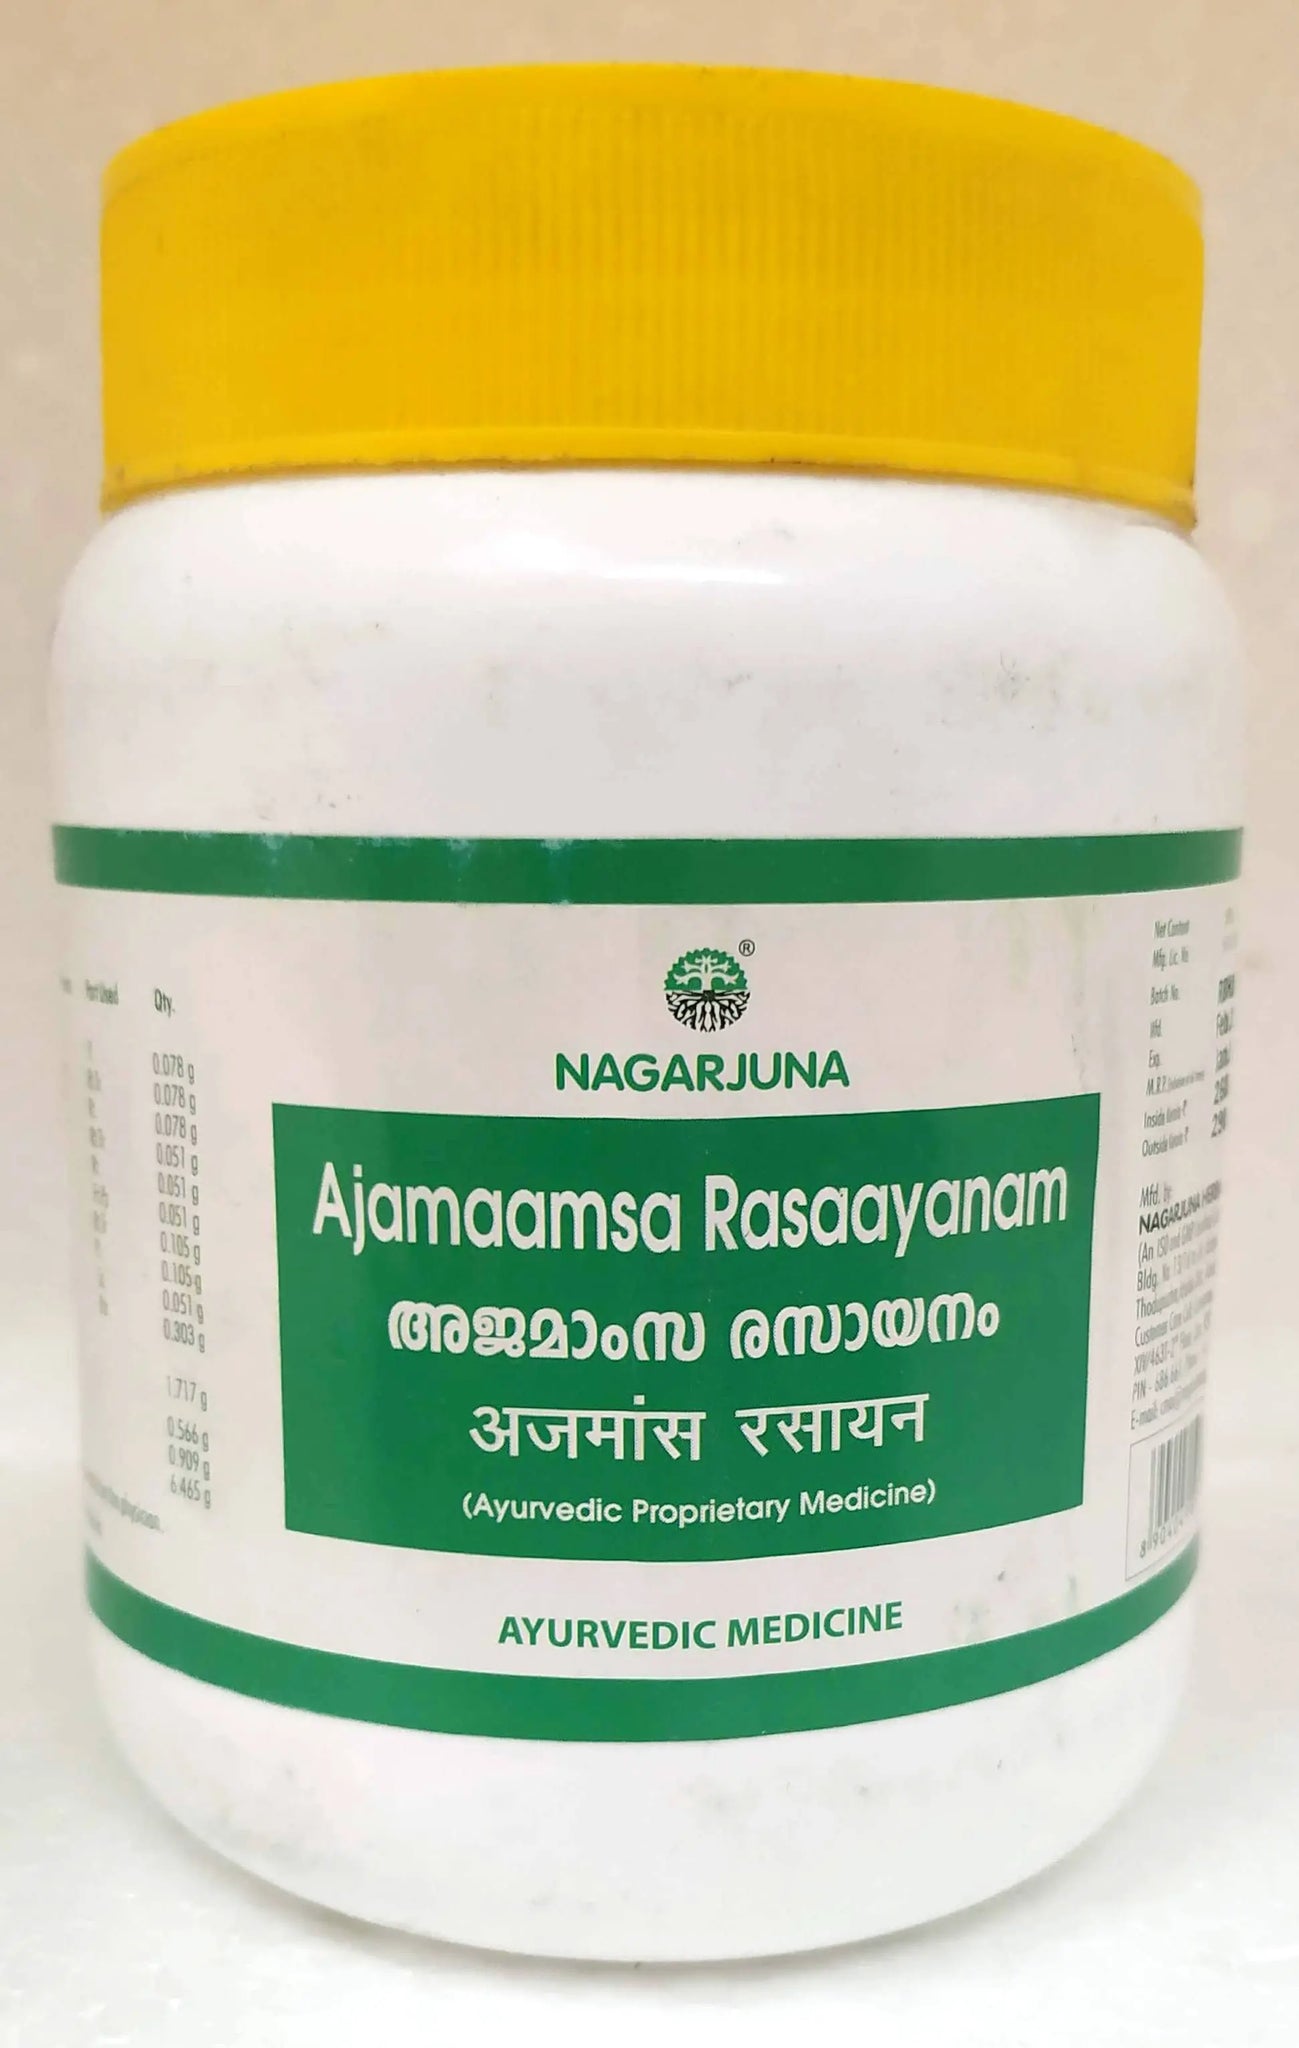 Nagarjuna Ajamaamsa Rasayanam 500gm Nagarjuna